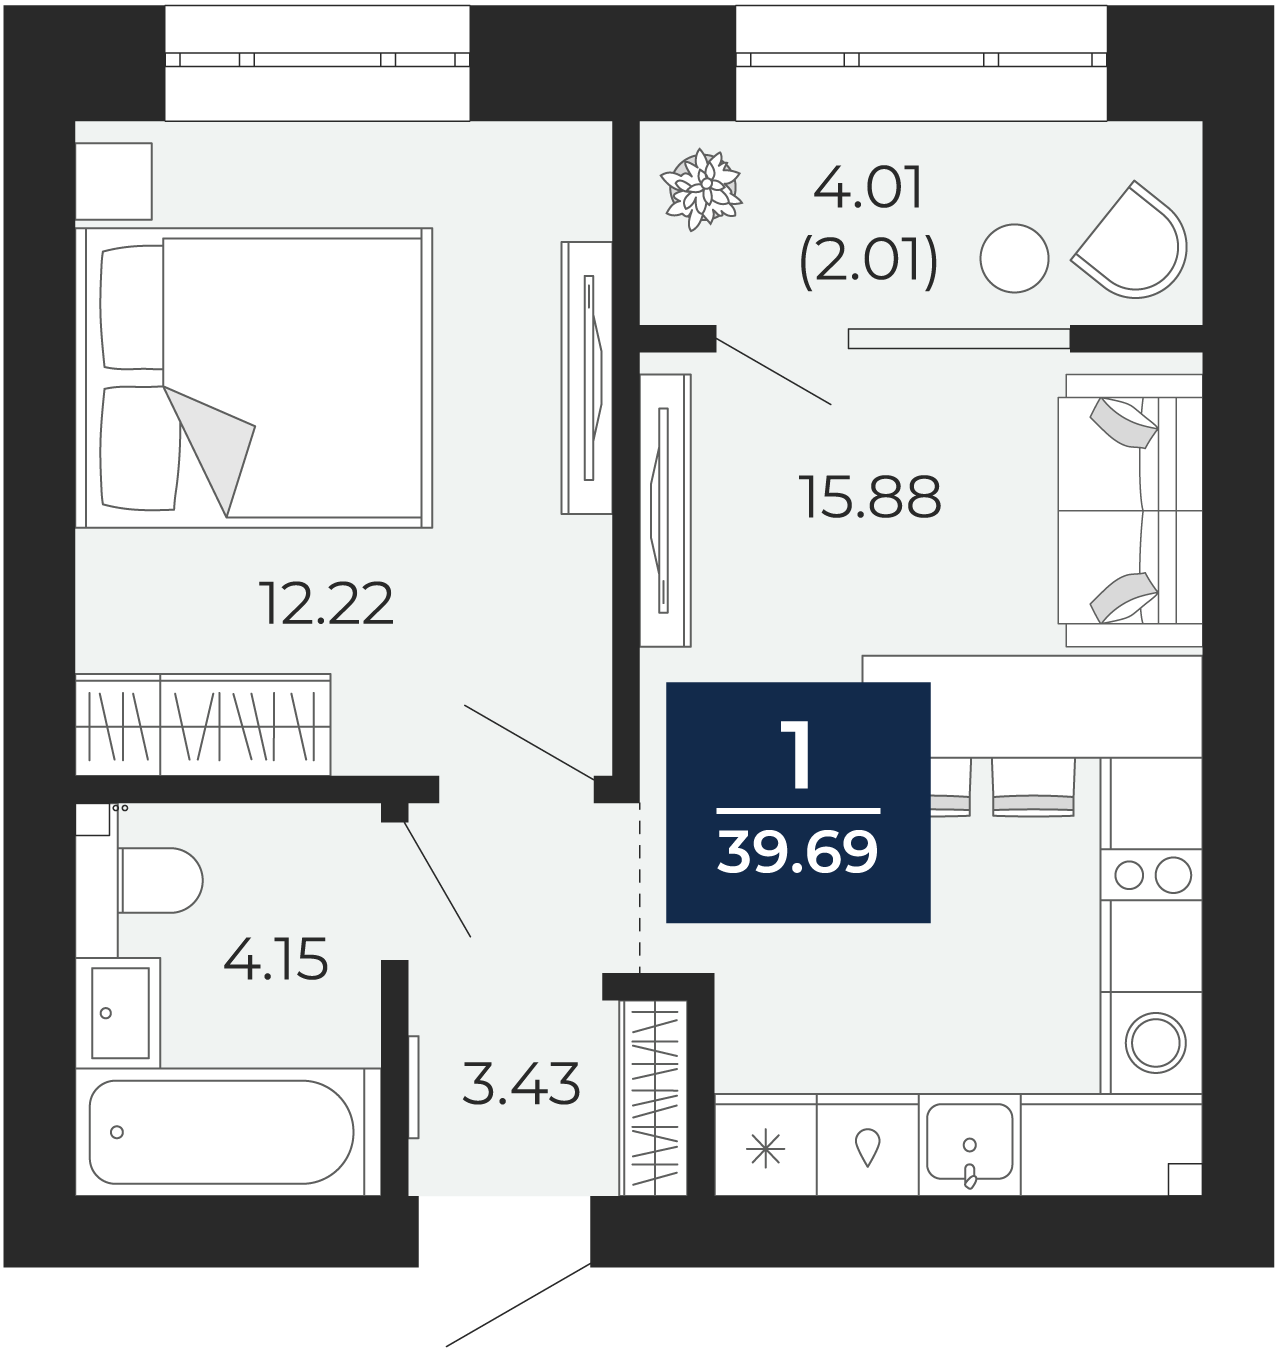 Квартира № 212, 1-комнатная, 39.69 кв. м, 4 этаж